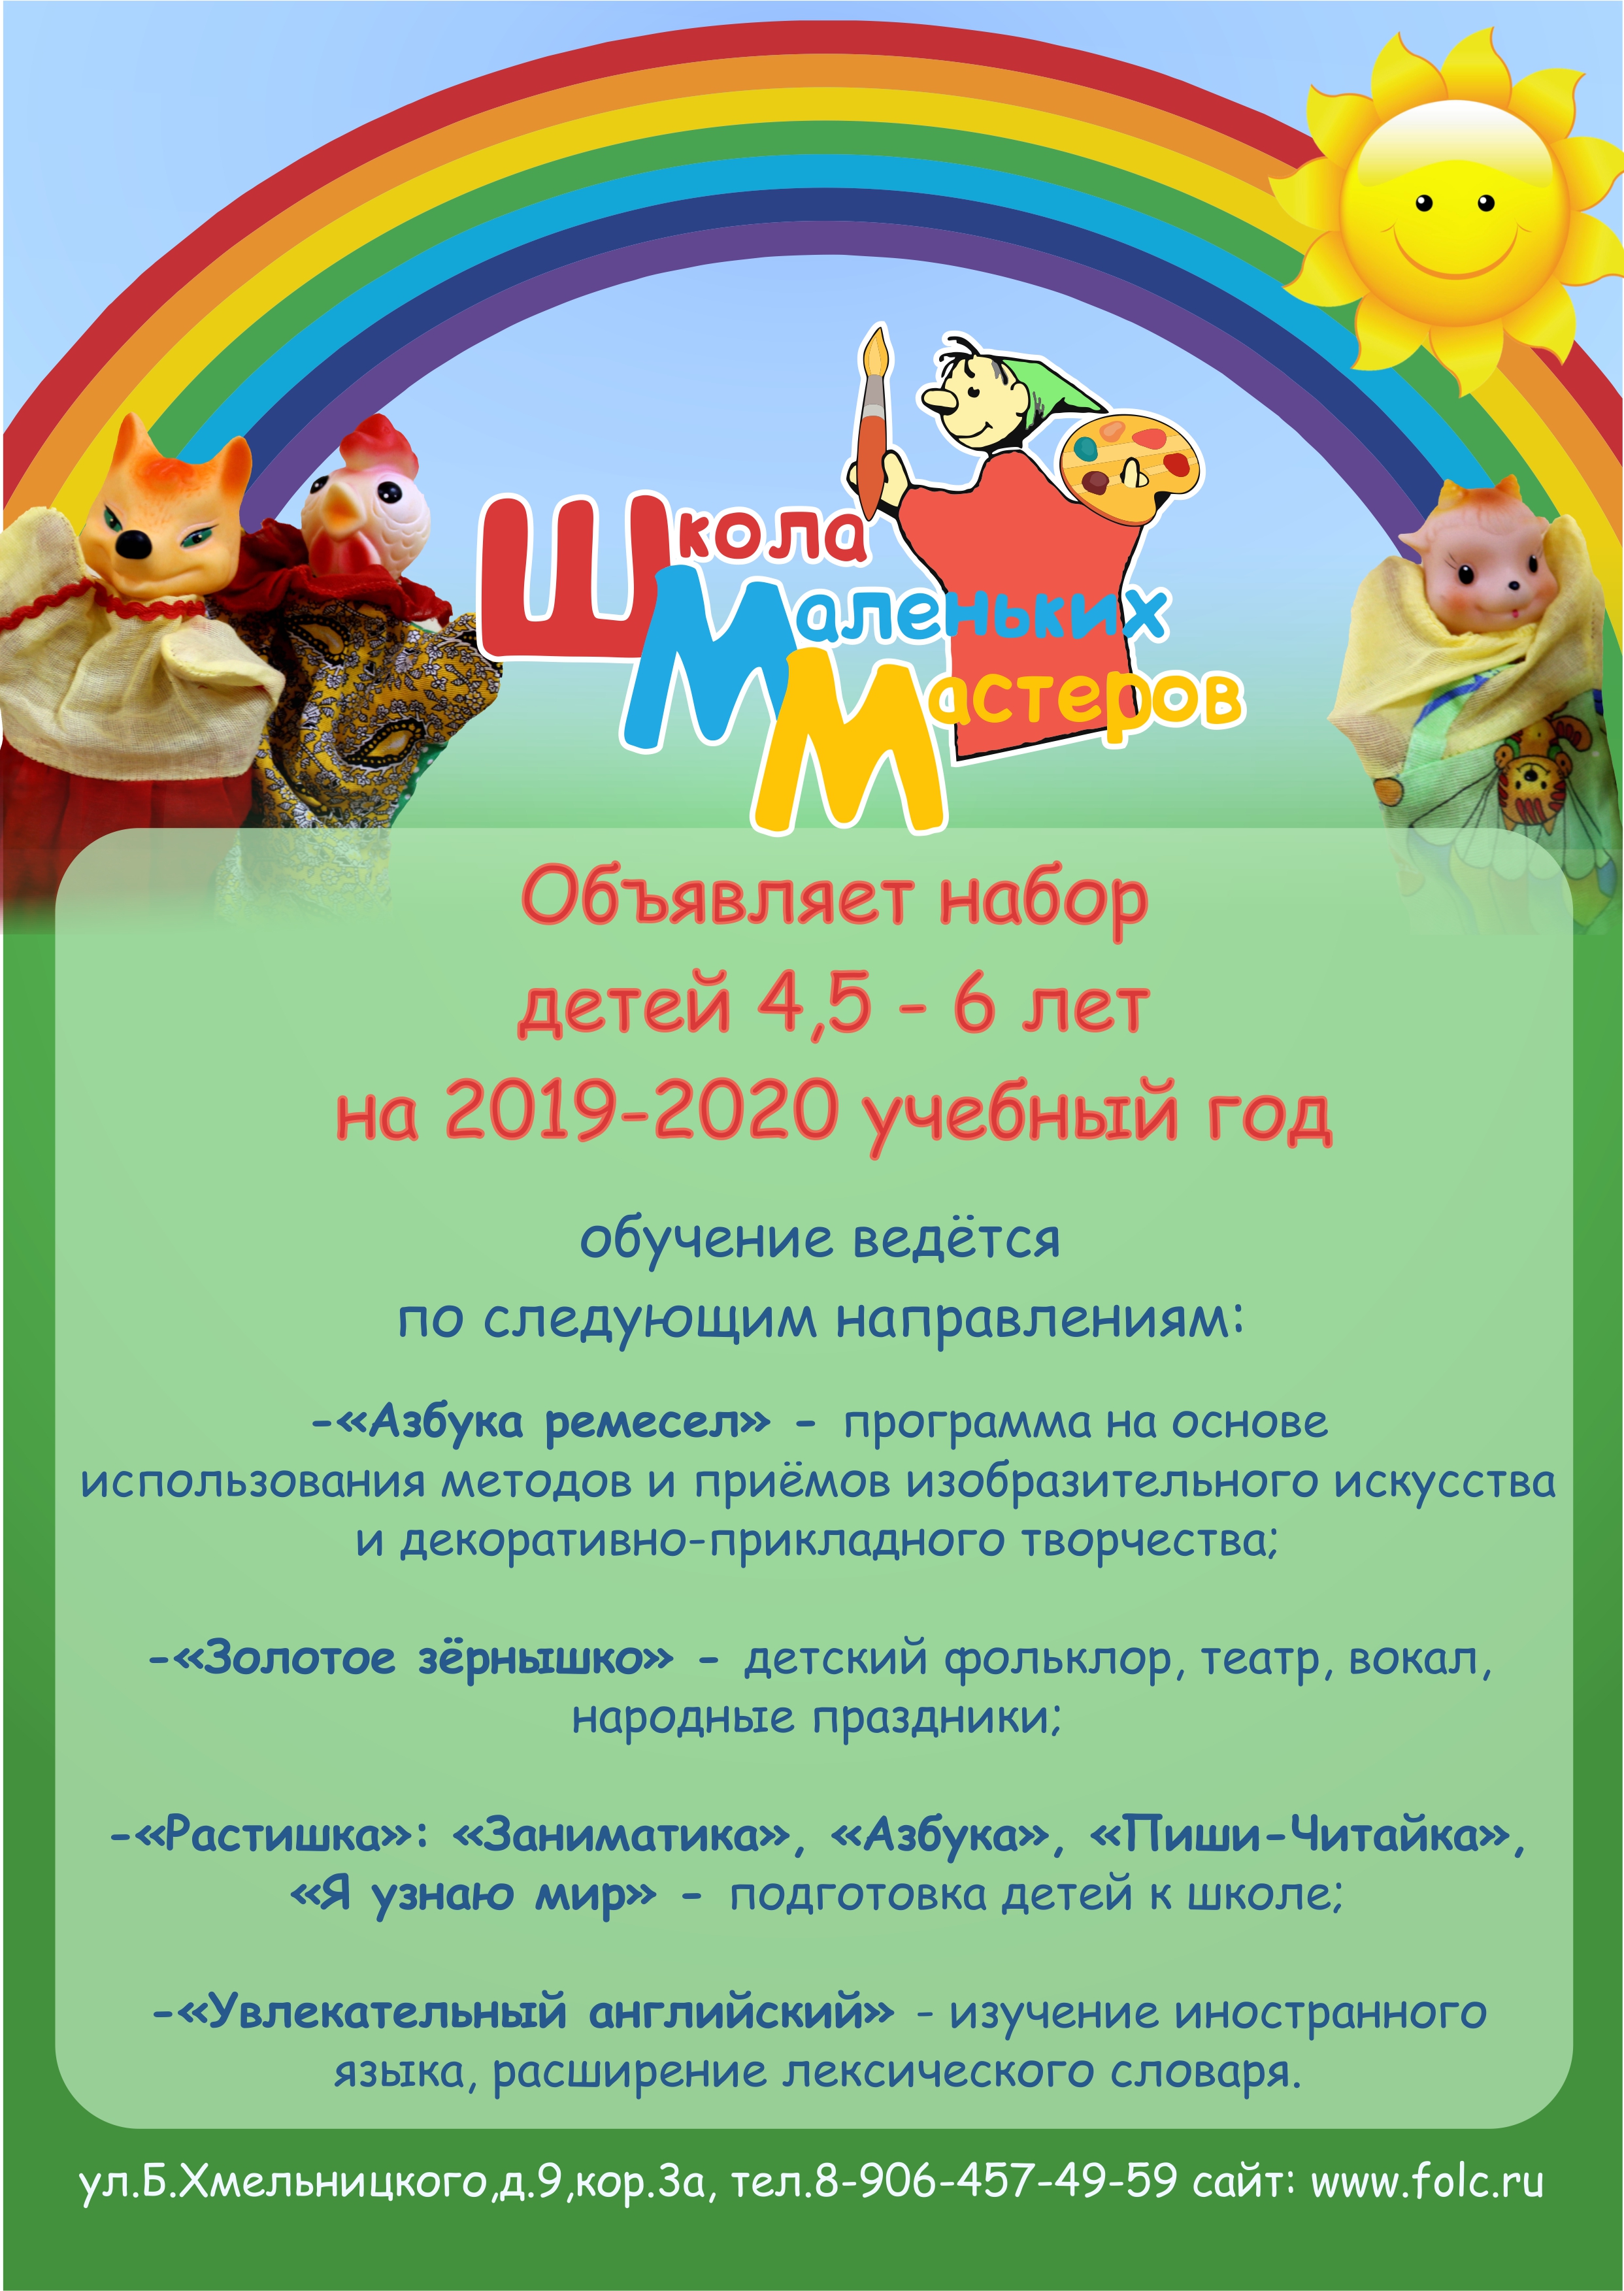 Школа маленьких мастеров объявляет набор детей на новый 2019-2020 учебный год